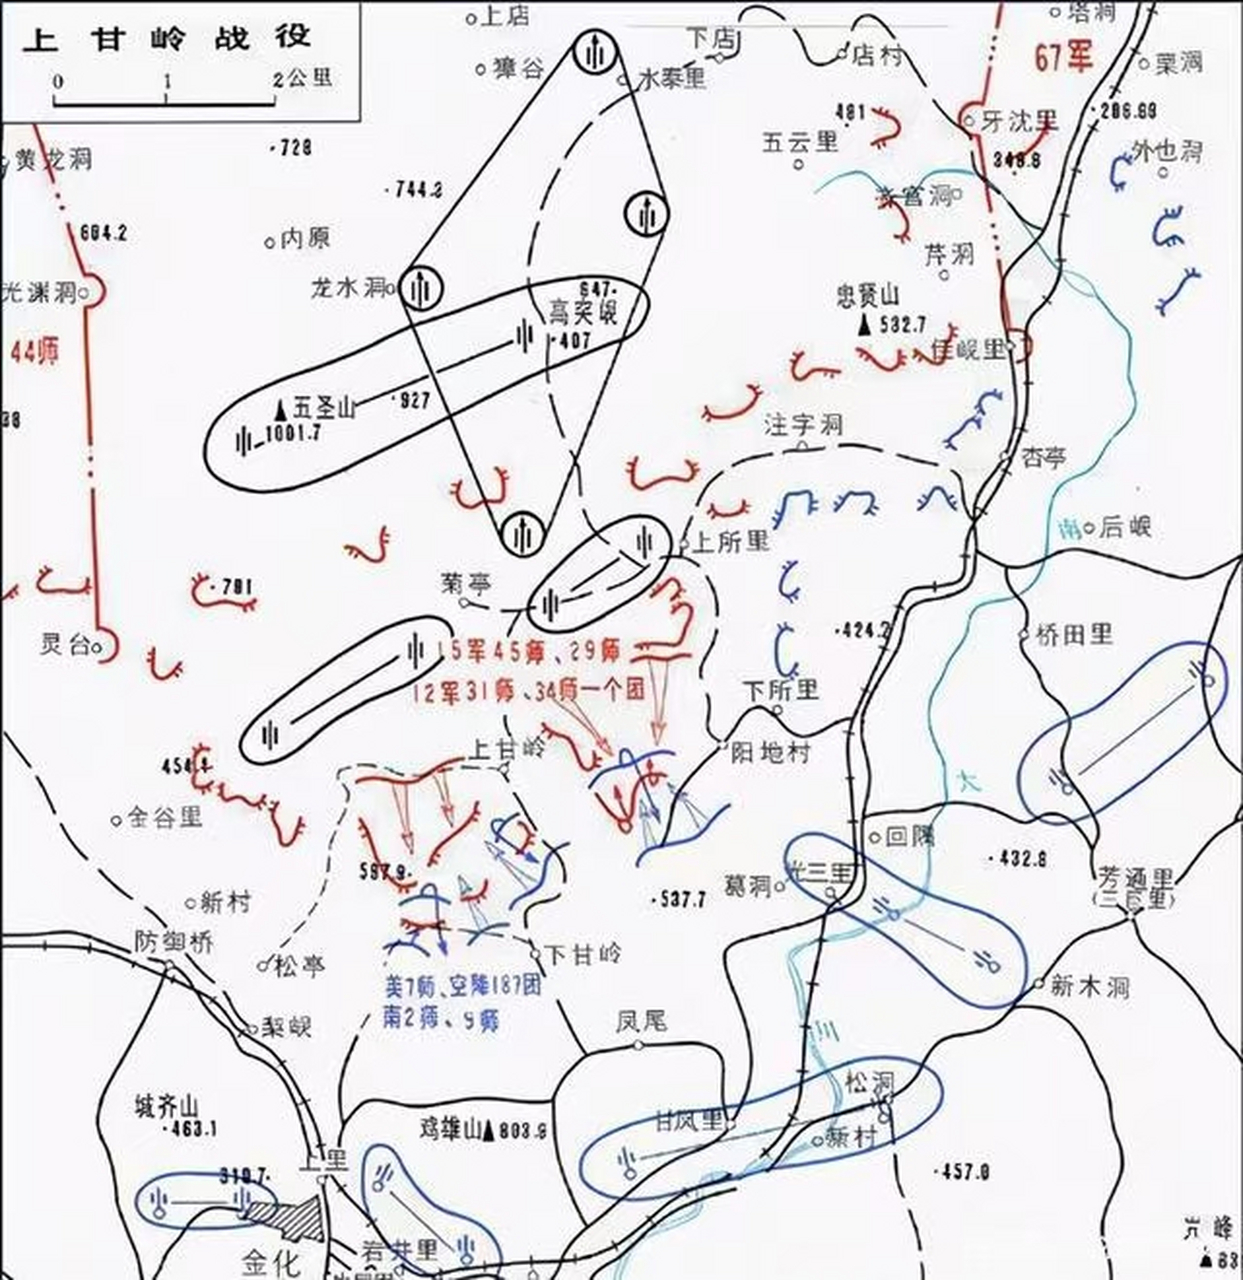 上甘岭战役:美军攻占了我5979高地和537